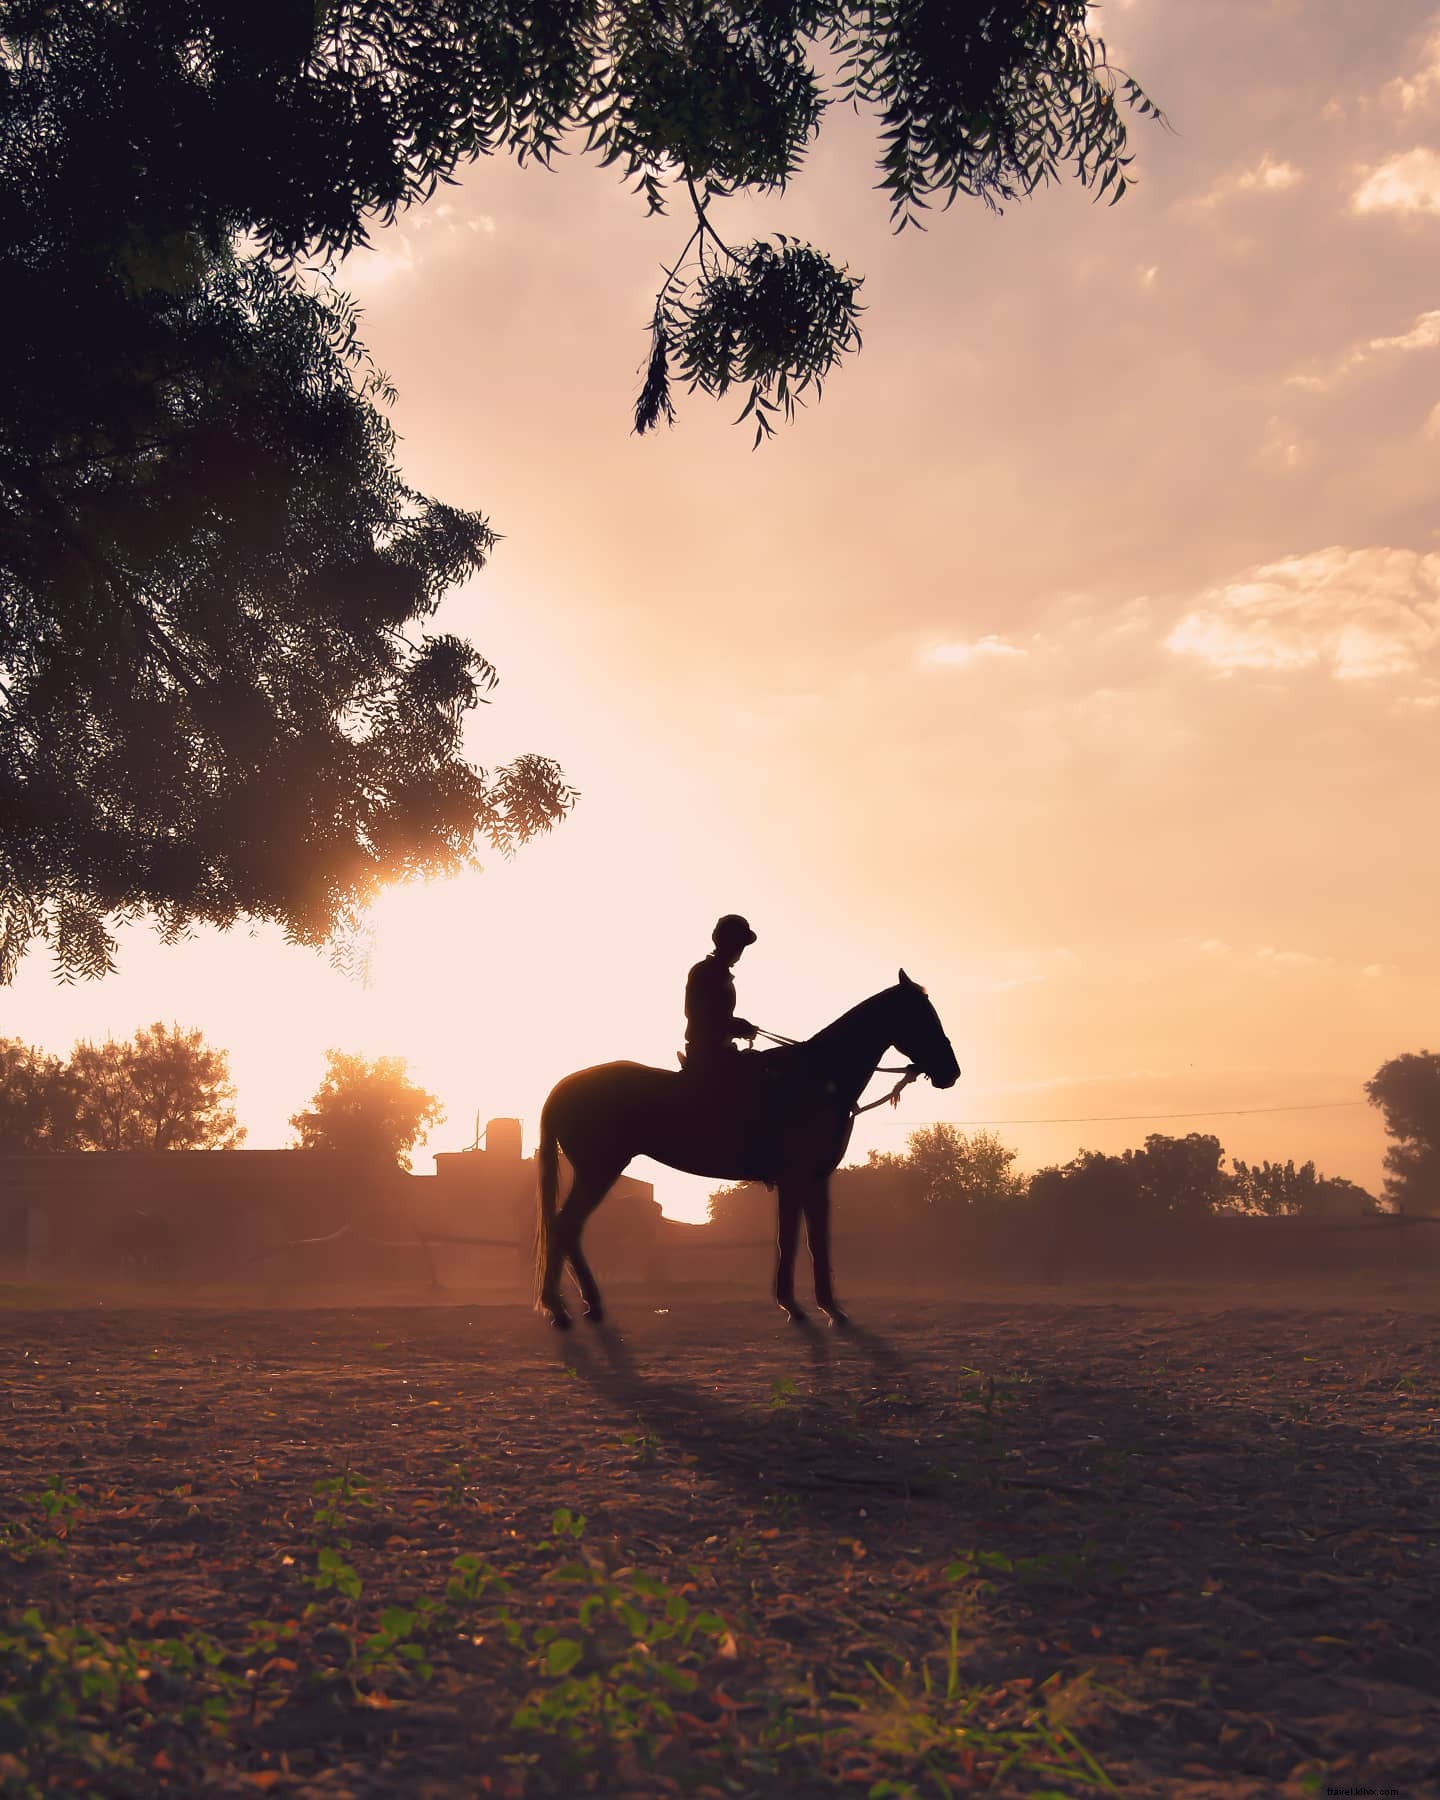 Persona silueta sobre un caballo en una foto de campo abierto